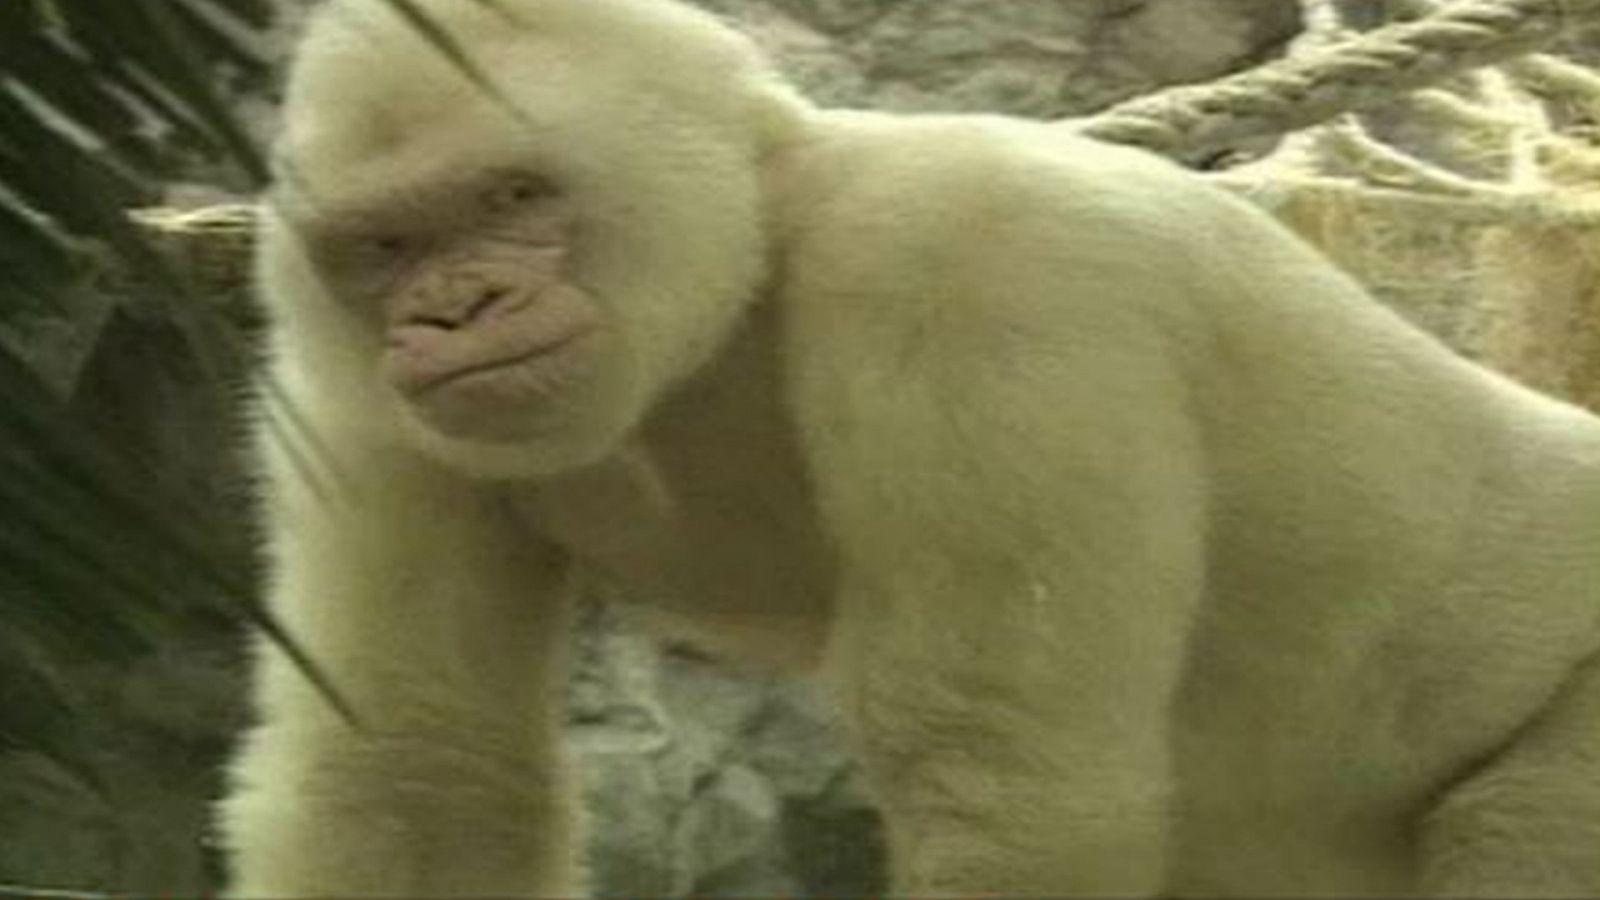 La 2 Noticias - Nace un nieto de Copito de Nieve, el gorila blanco que vive sus últimos días enfermo